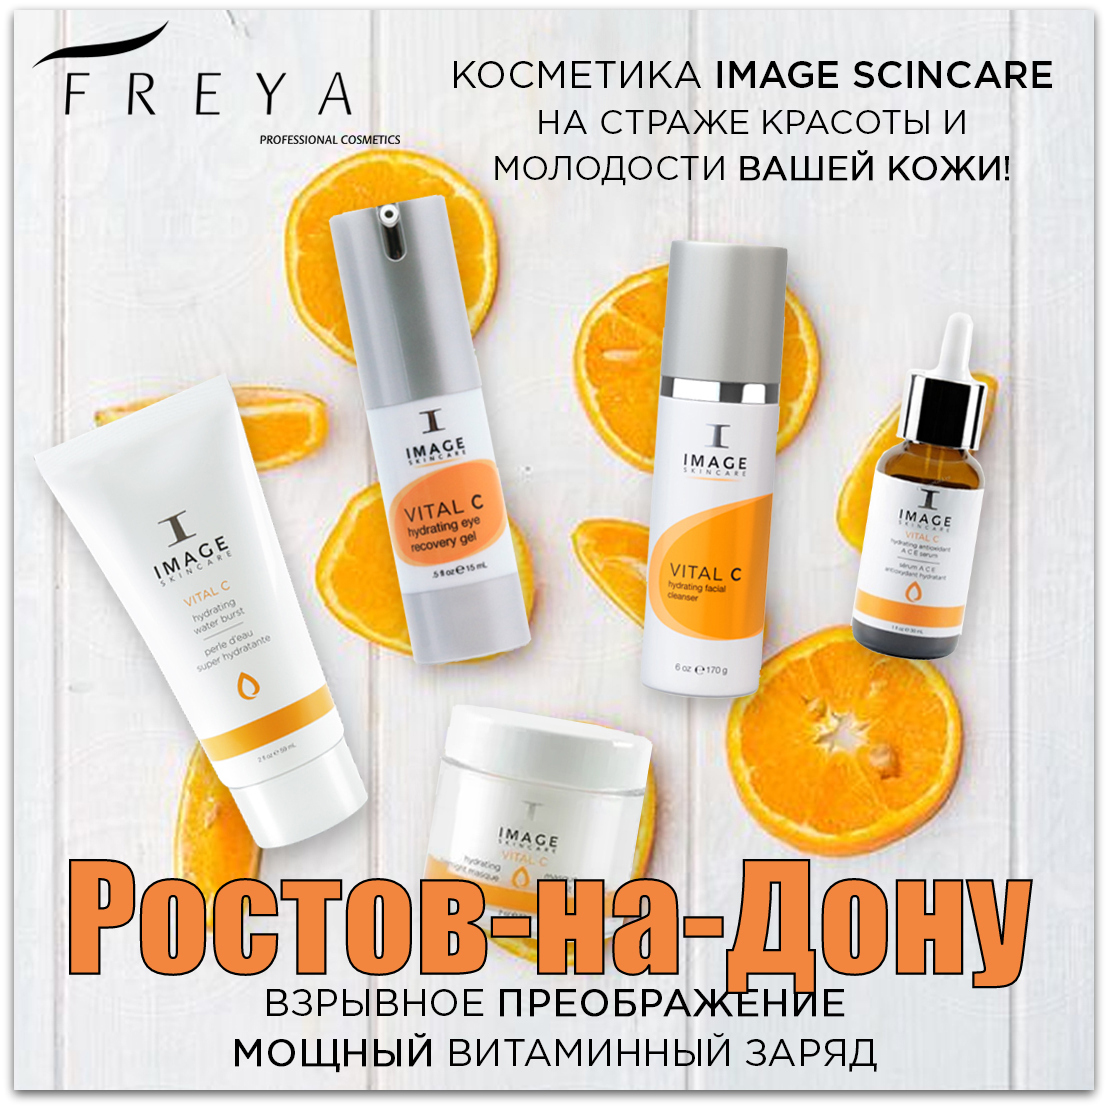 В Ростовской области - профессиональный бренд Image Skincare